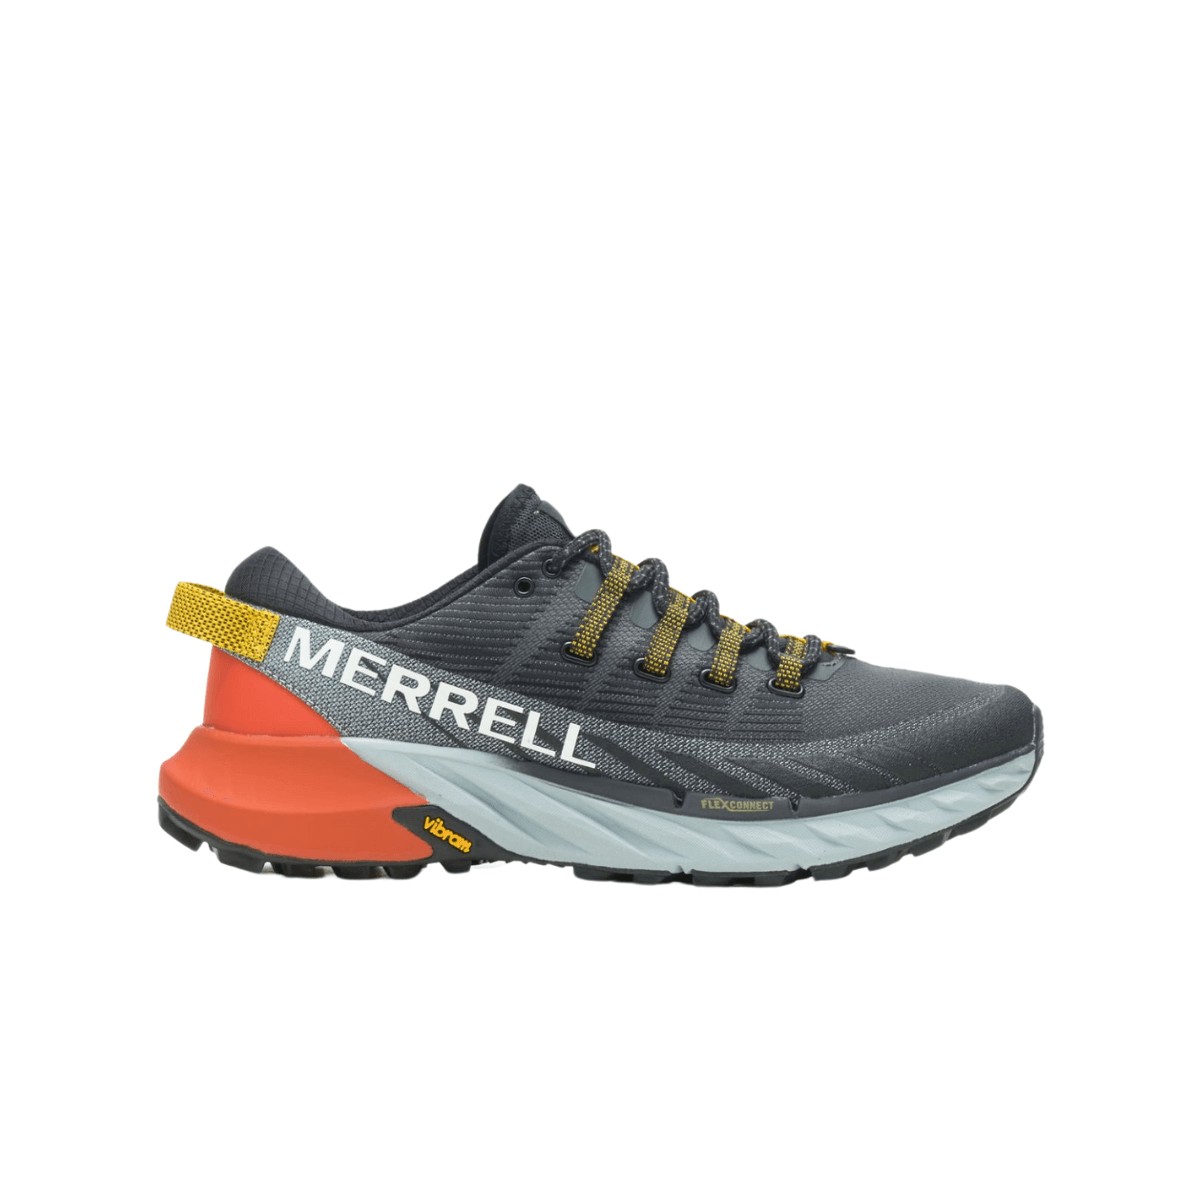 Schuhe Merrell Agility Peak 4 Grau Orange AW22, Größe 42 - EUR